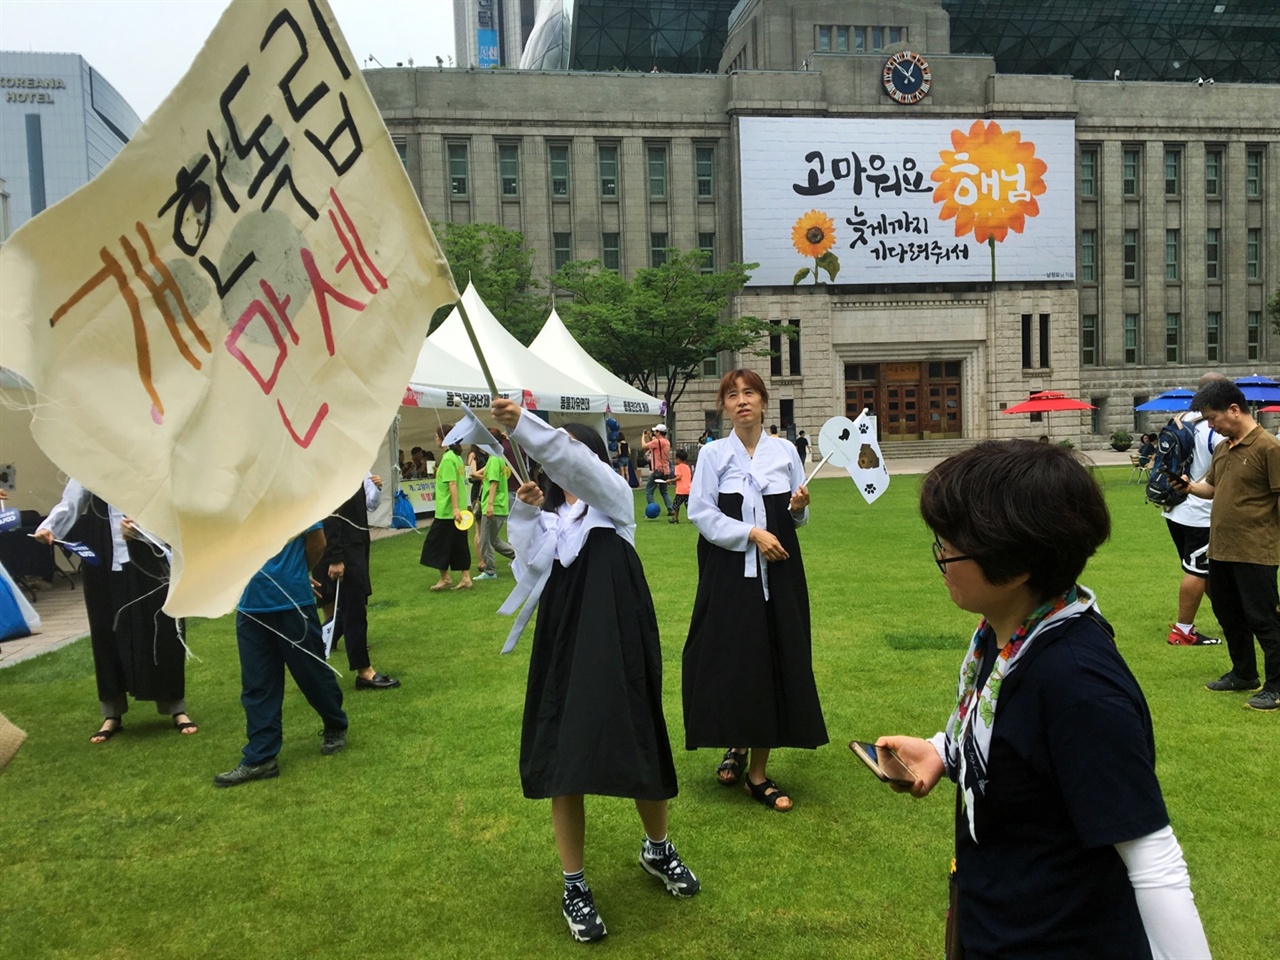  지난 7월 9일 서울 시청 광장에서 있었던 'STOP IT-이제 그만 잡수시개' 행사가 있었다. 이 행사에 참여한 한 행사자는 한복을 입고 큰 깃발을 흔들면서 퍼포먼스를 진행하고 있다.